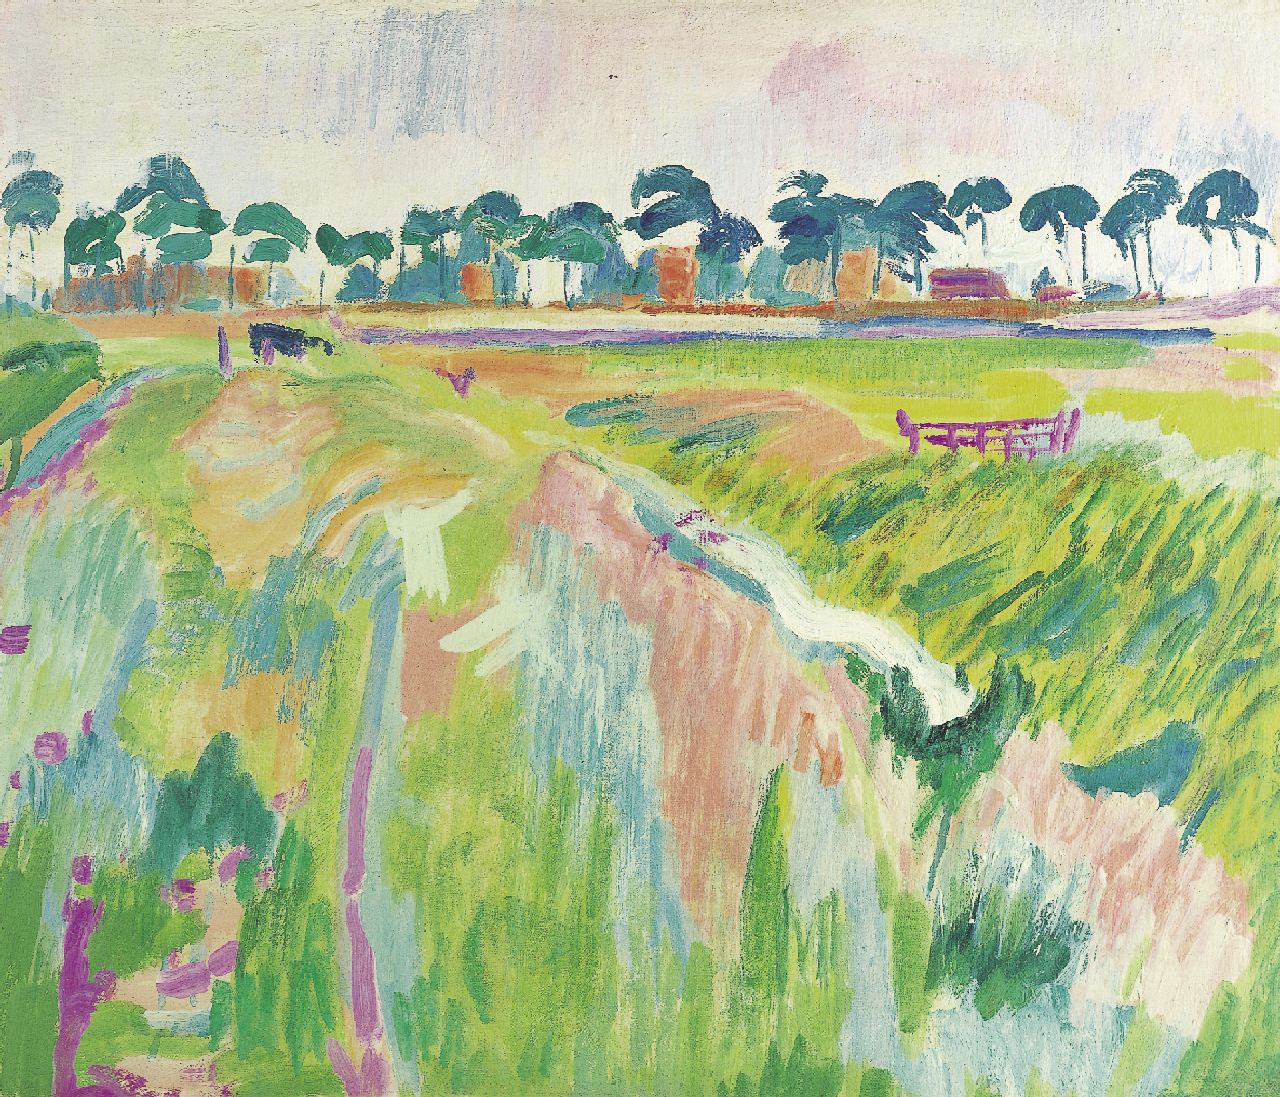 Altink J.  | Jan Altink, A landscape, Groningen, recto and verso, Wachsfarbe auf Leinwand 51,5 x 60,2 cm, zu datieren 1926